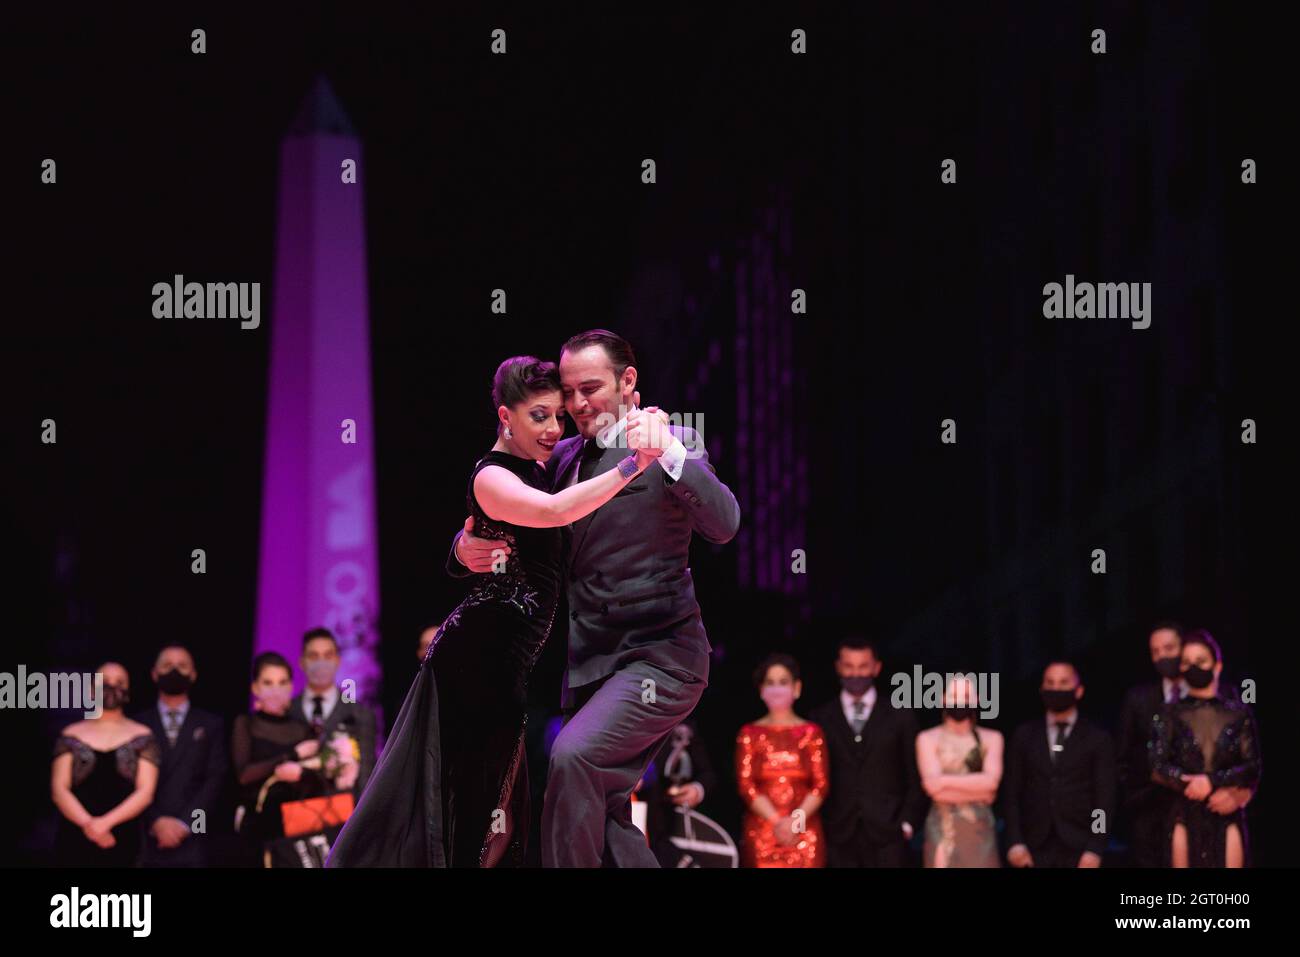 25. September 2021, Argentinien, Buenos Aires: Bárbara Ferreyra & Agustín Agnez tanzen während der Finalrunde der Tango-Weltmeisterschaft. Stockfoto